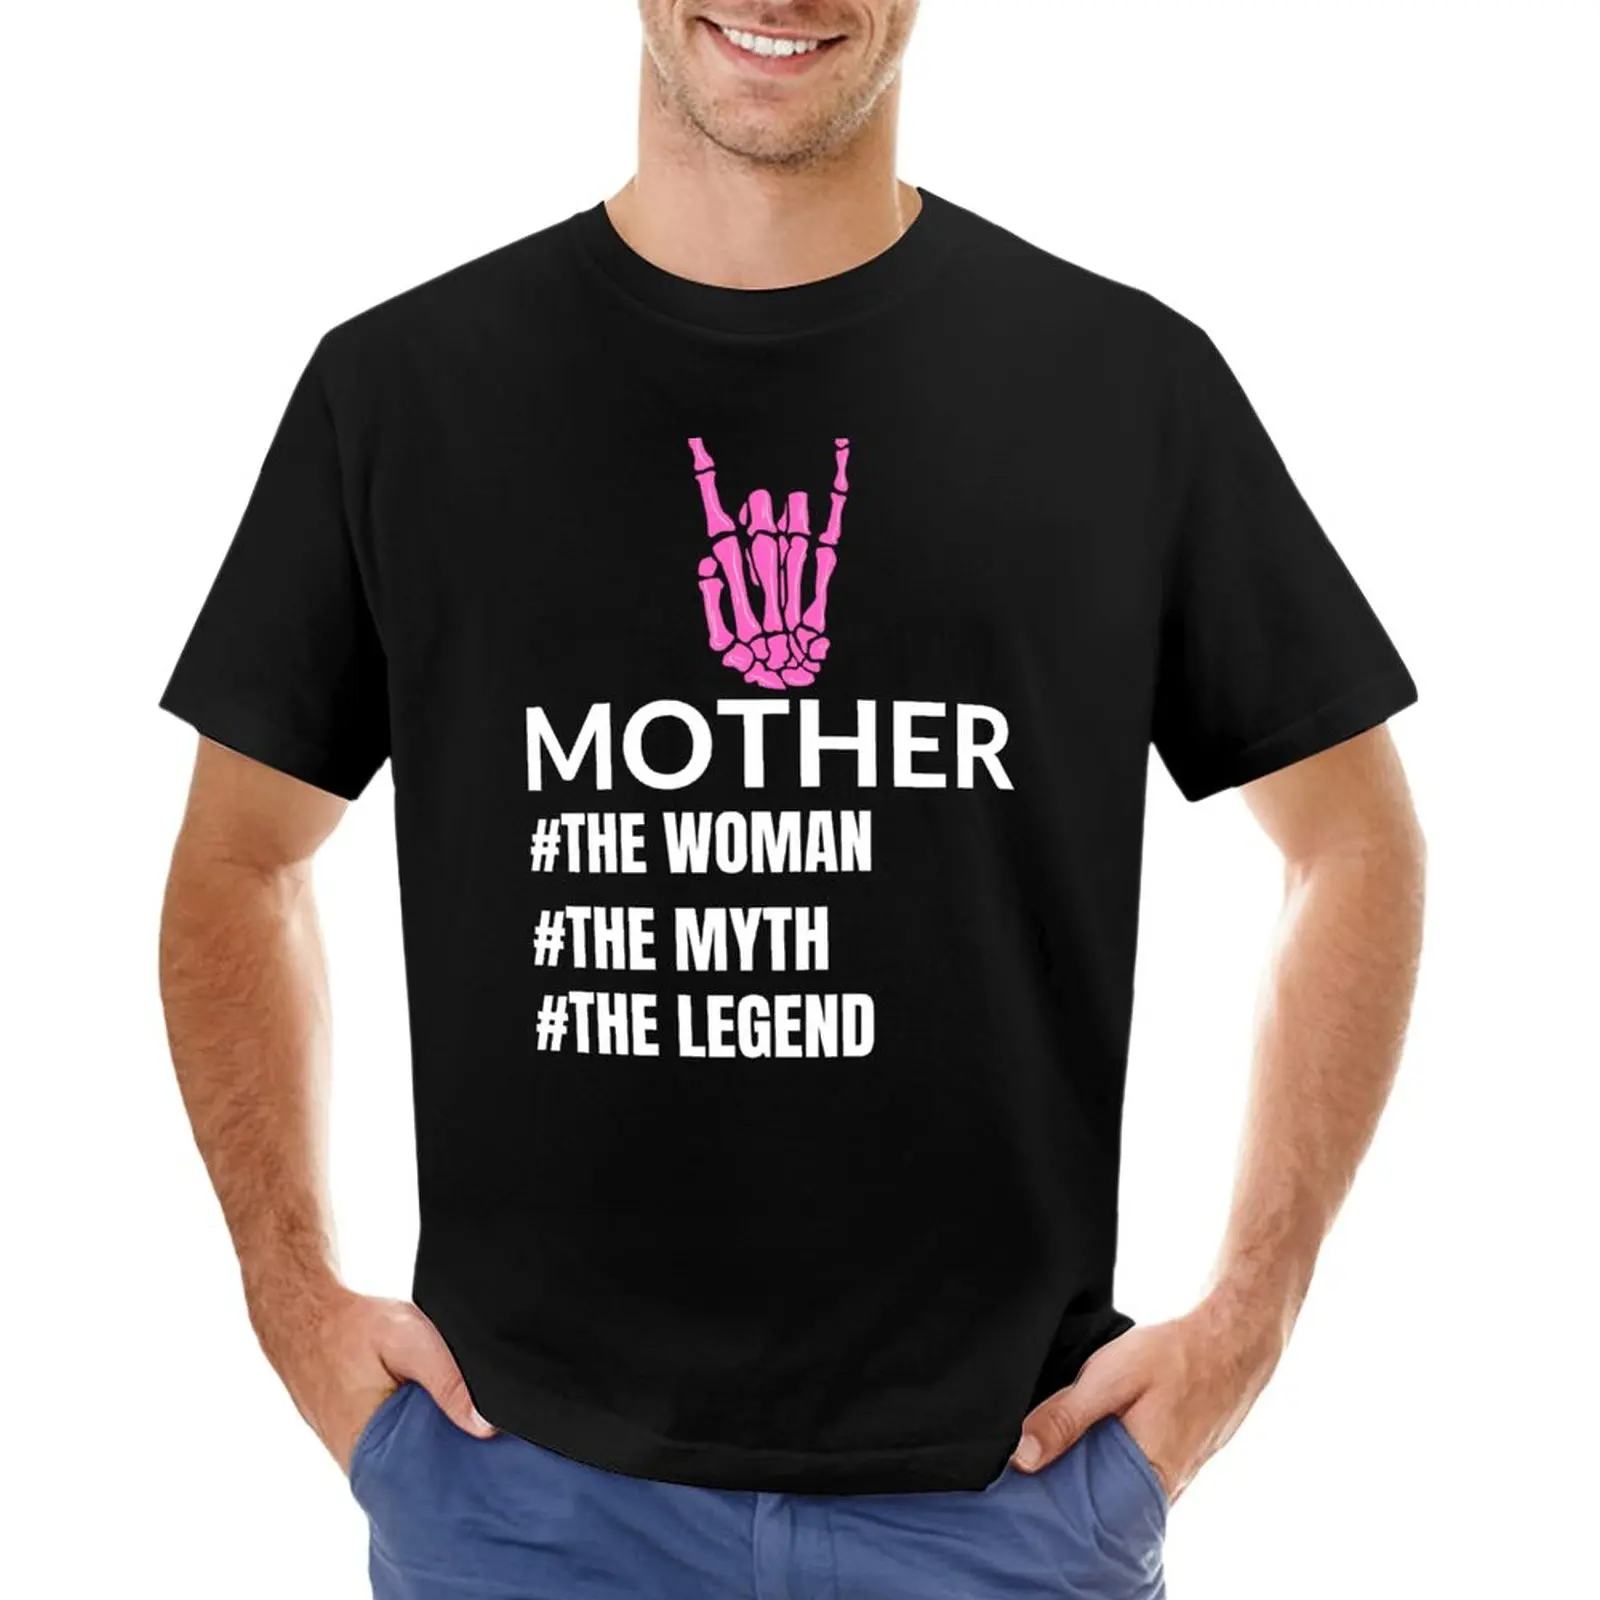 

Мужская и женская футболка с надписью «Mother The myth the legend»